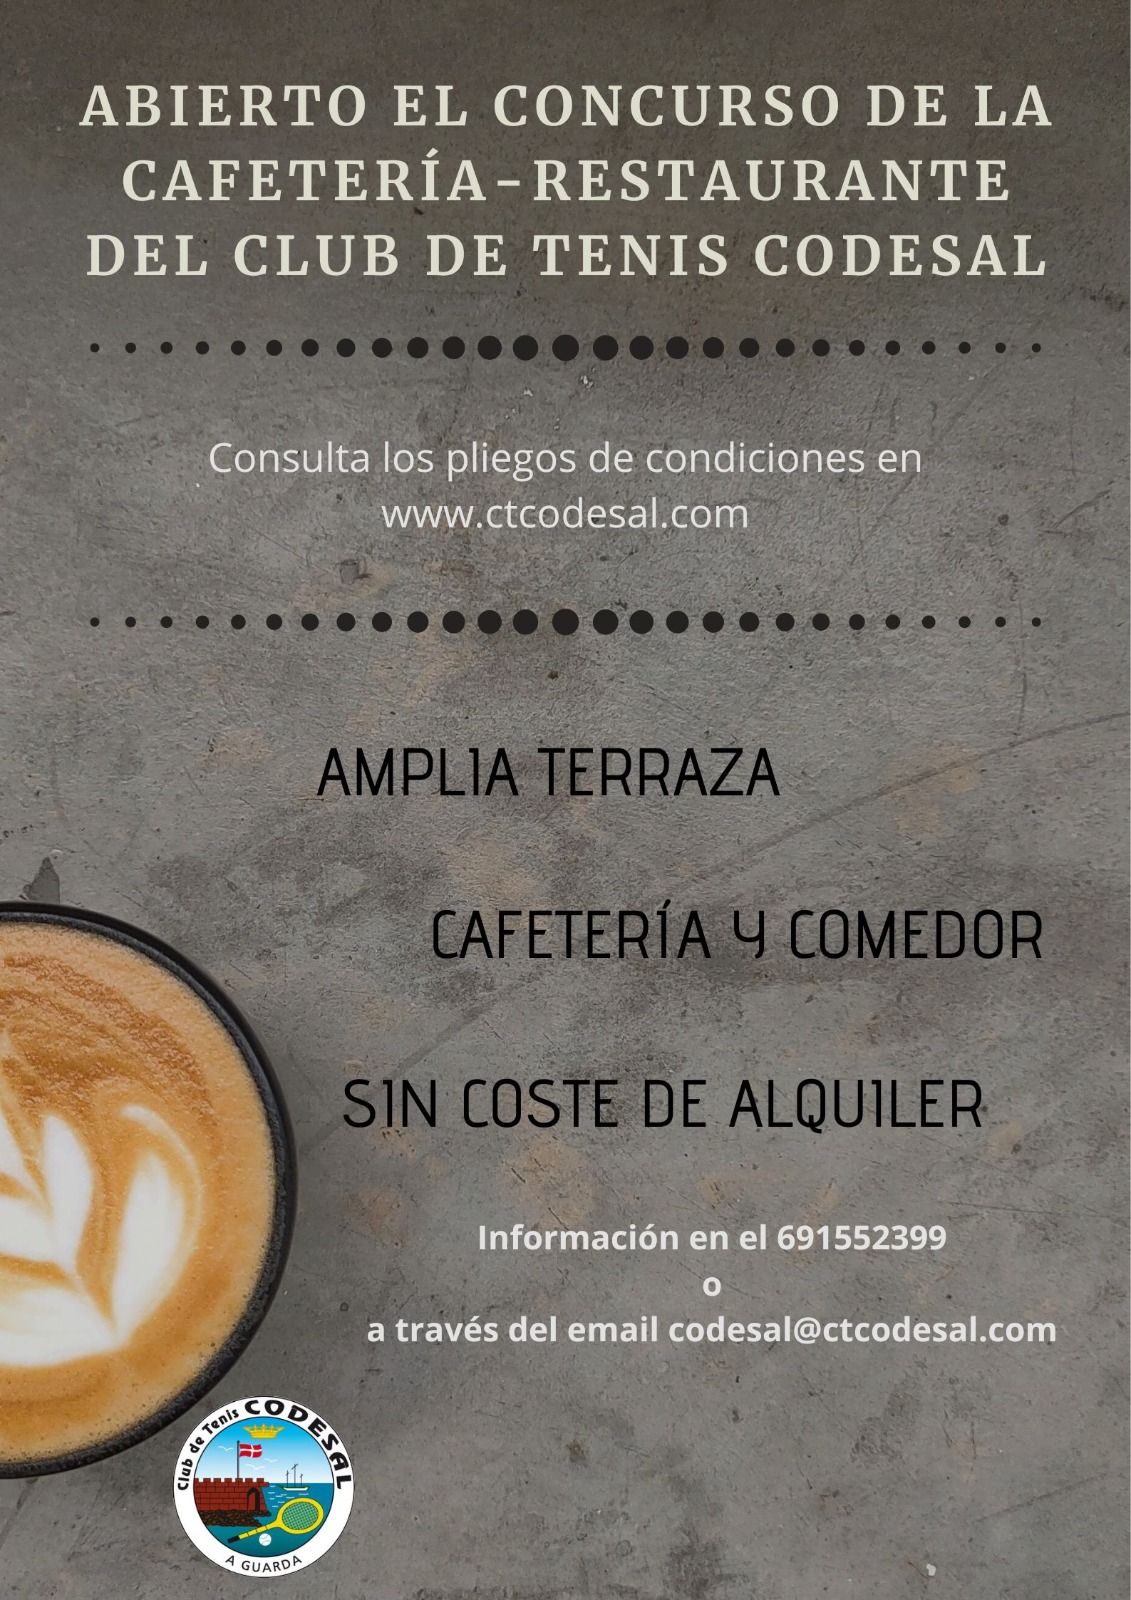 Abierto el concurso de la Cafetería – Restaurante del Club de Tenis Codesal